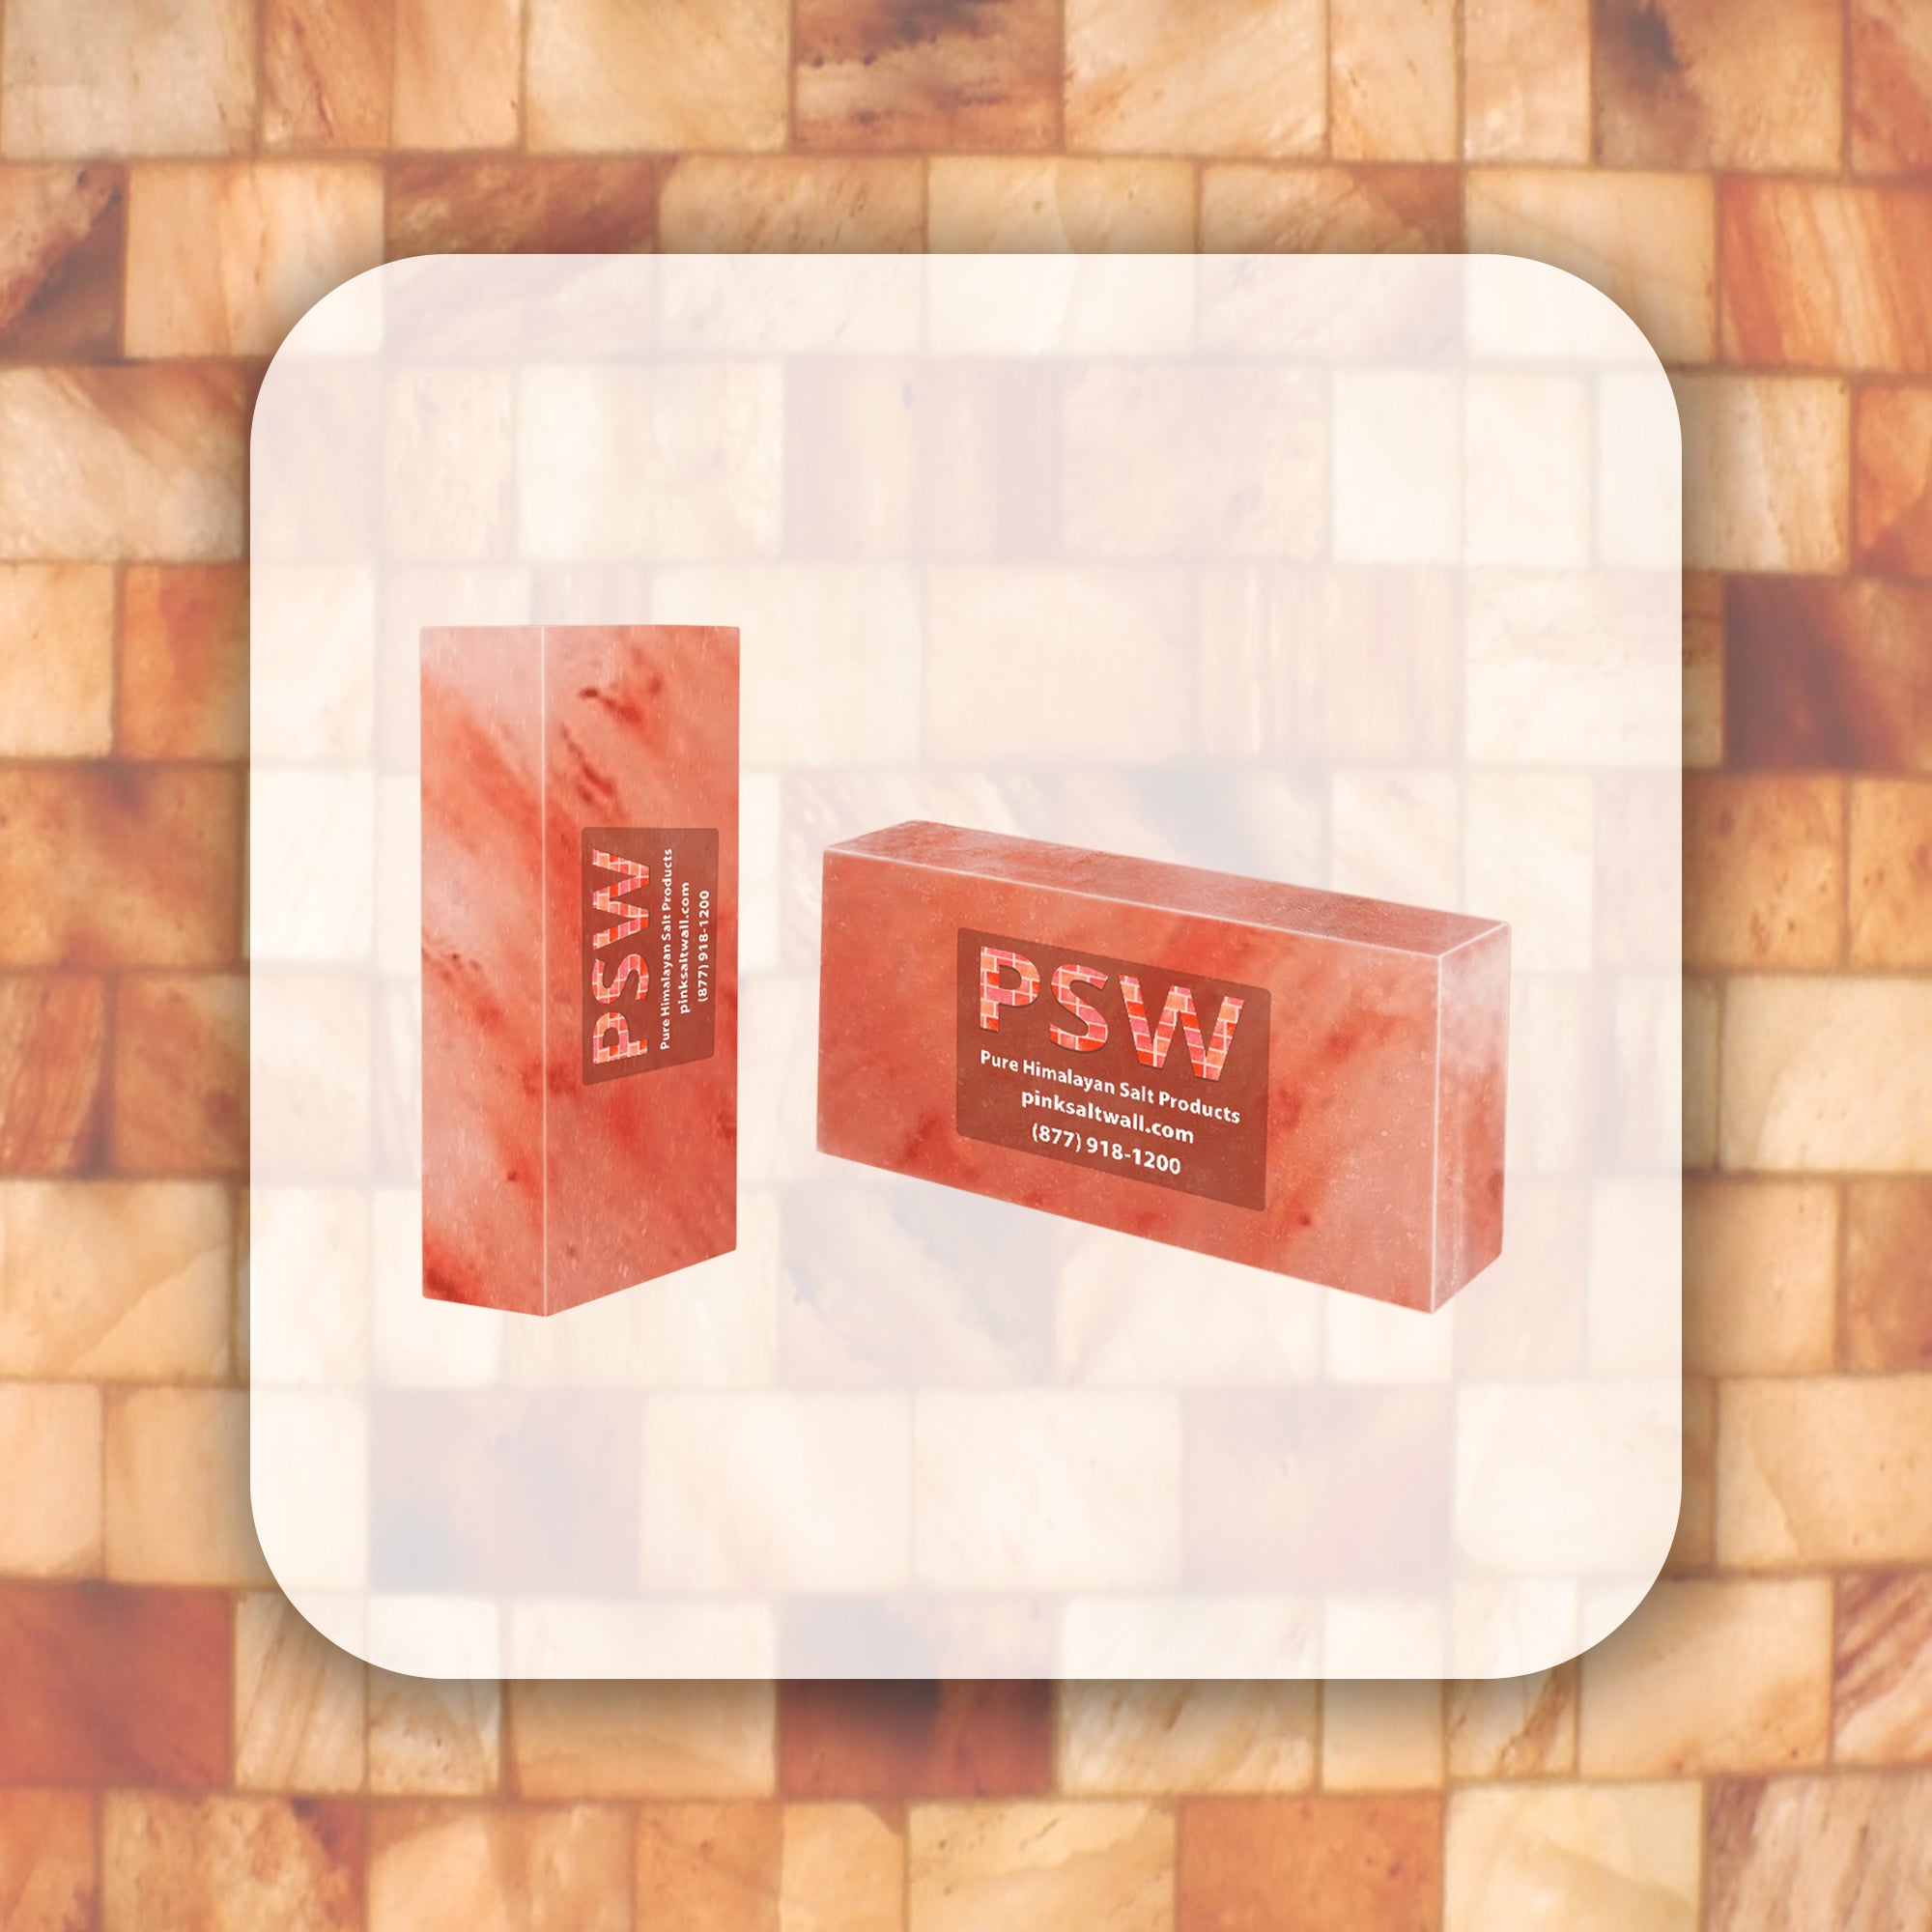 Duo – Himalayan Salt Bricks 8" x 4" x 2" - Pack of 2 - Free Shipping